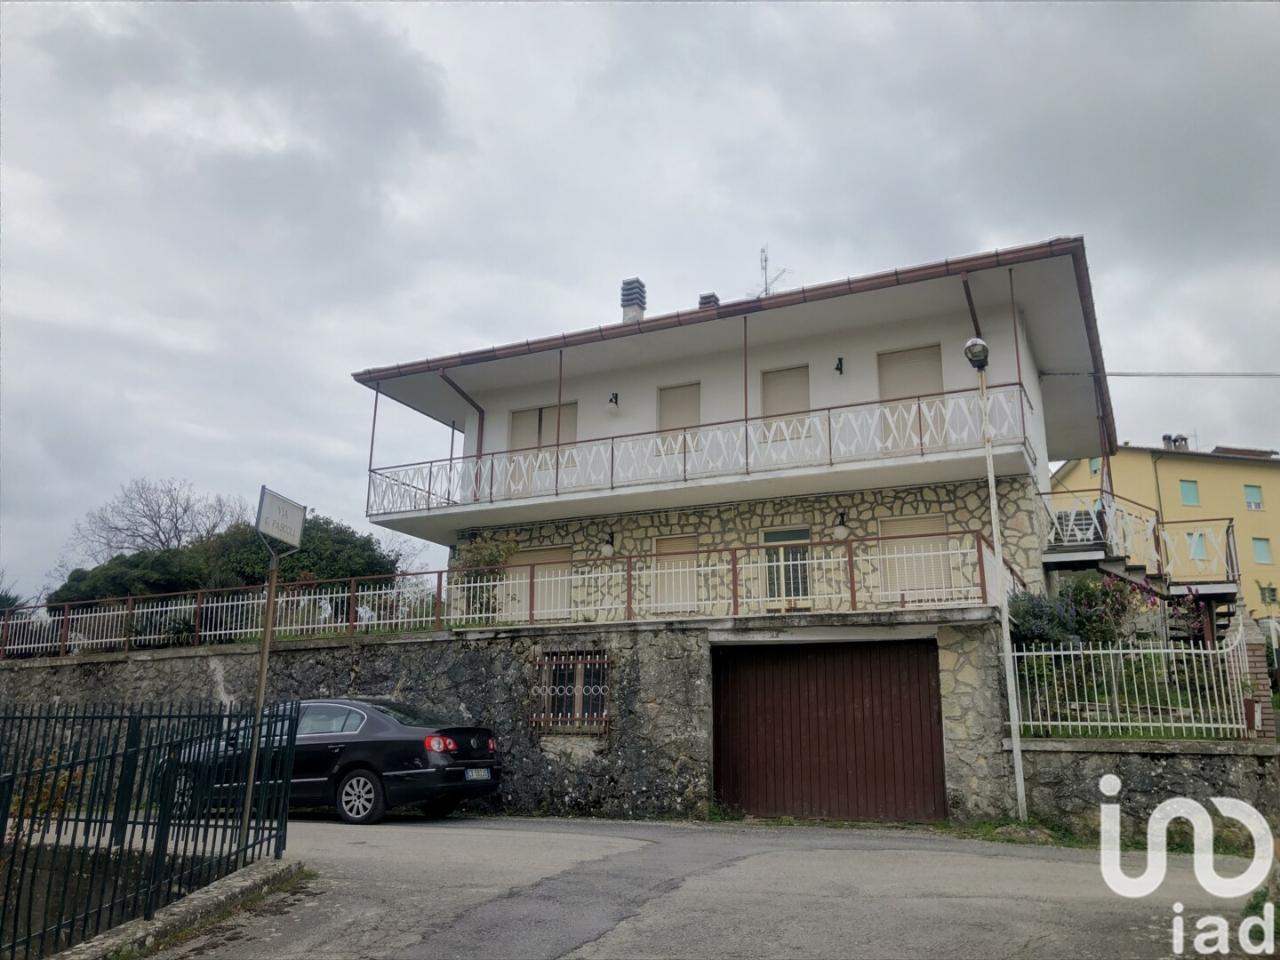 Villa in vendita a Monte Cerignone